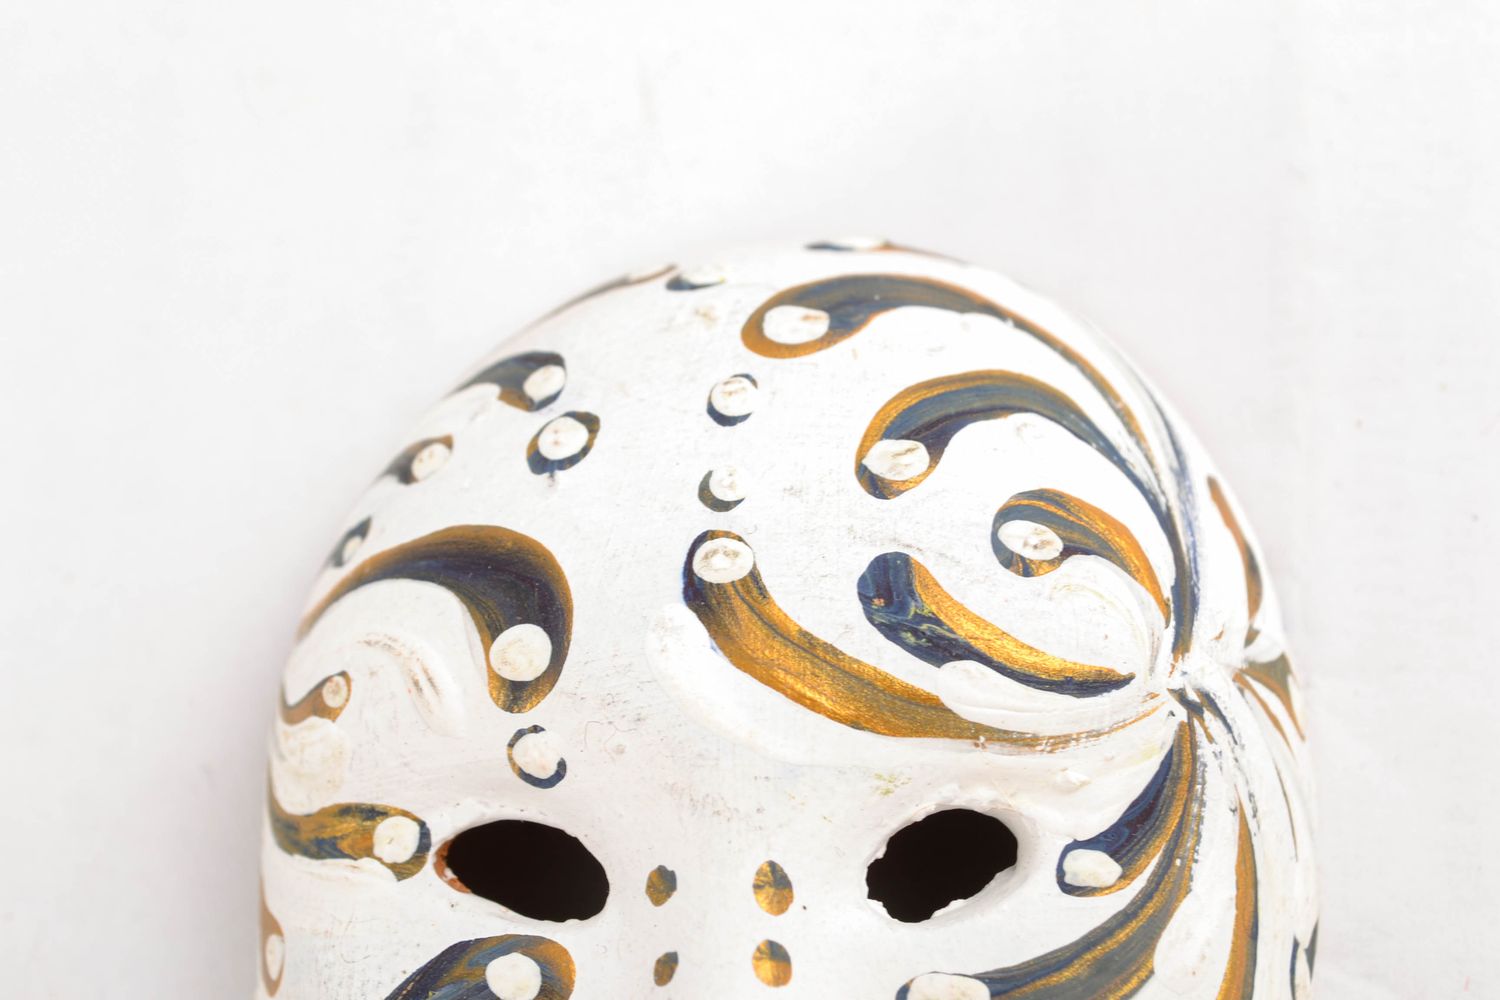 Магнит на хлодильник в виде сувенирной маски фото 4